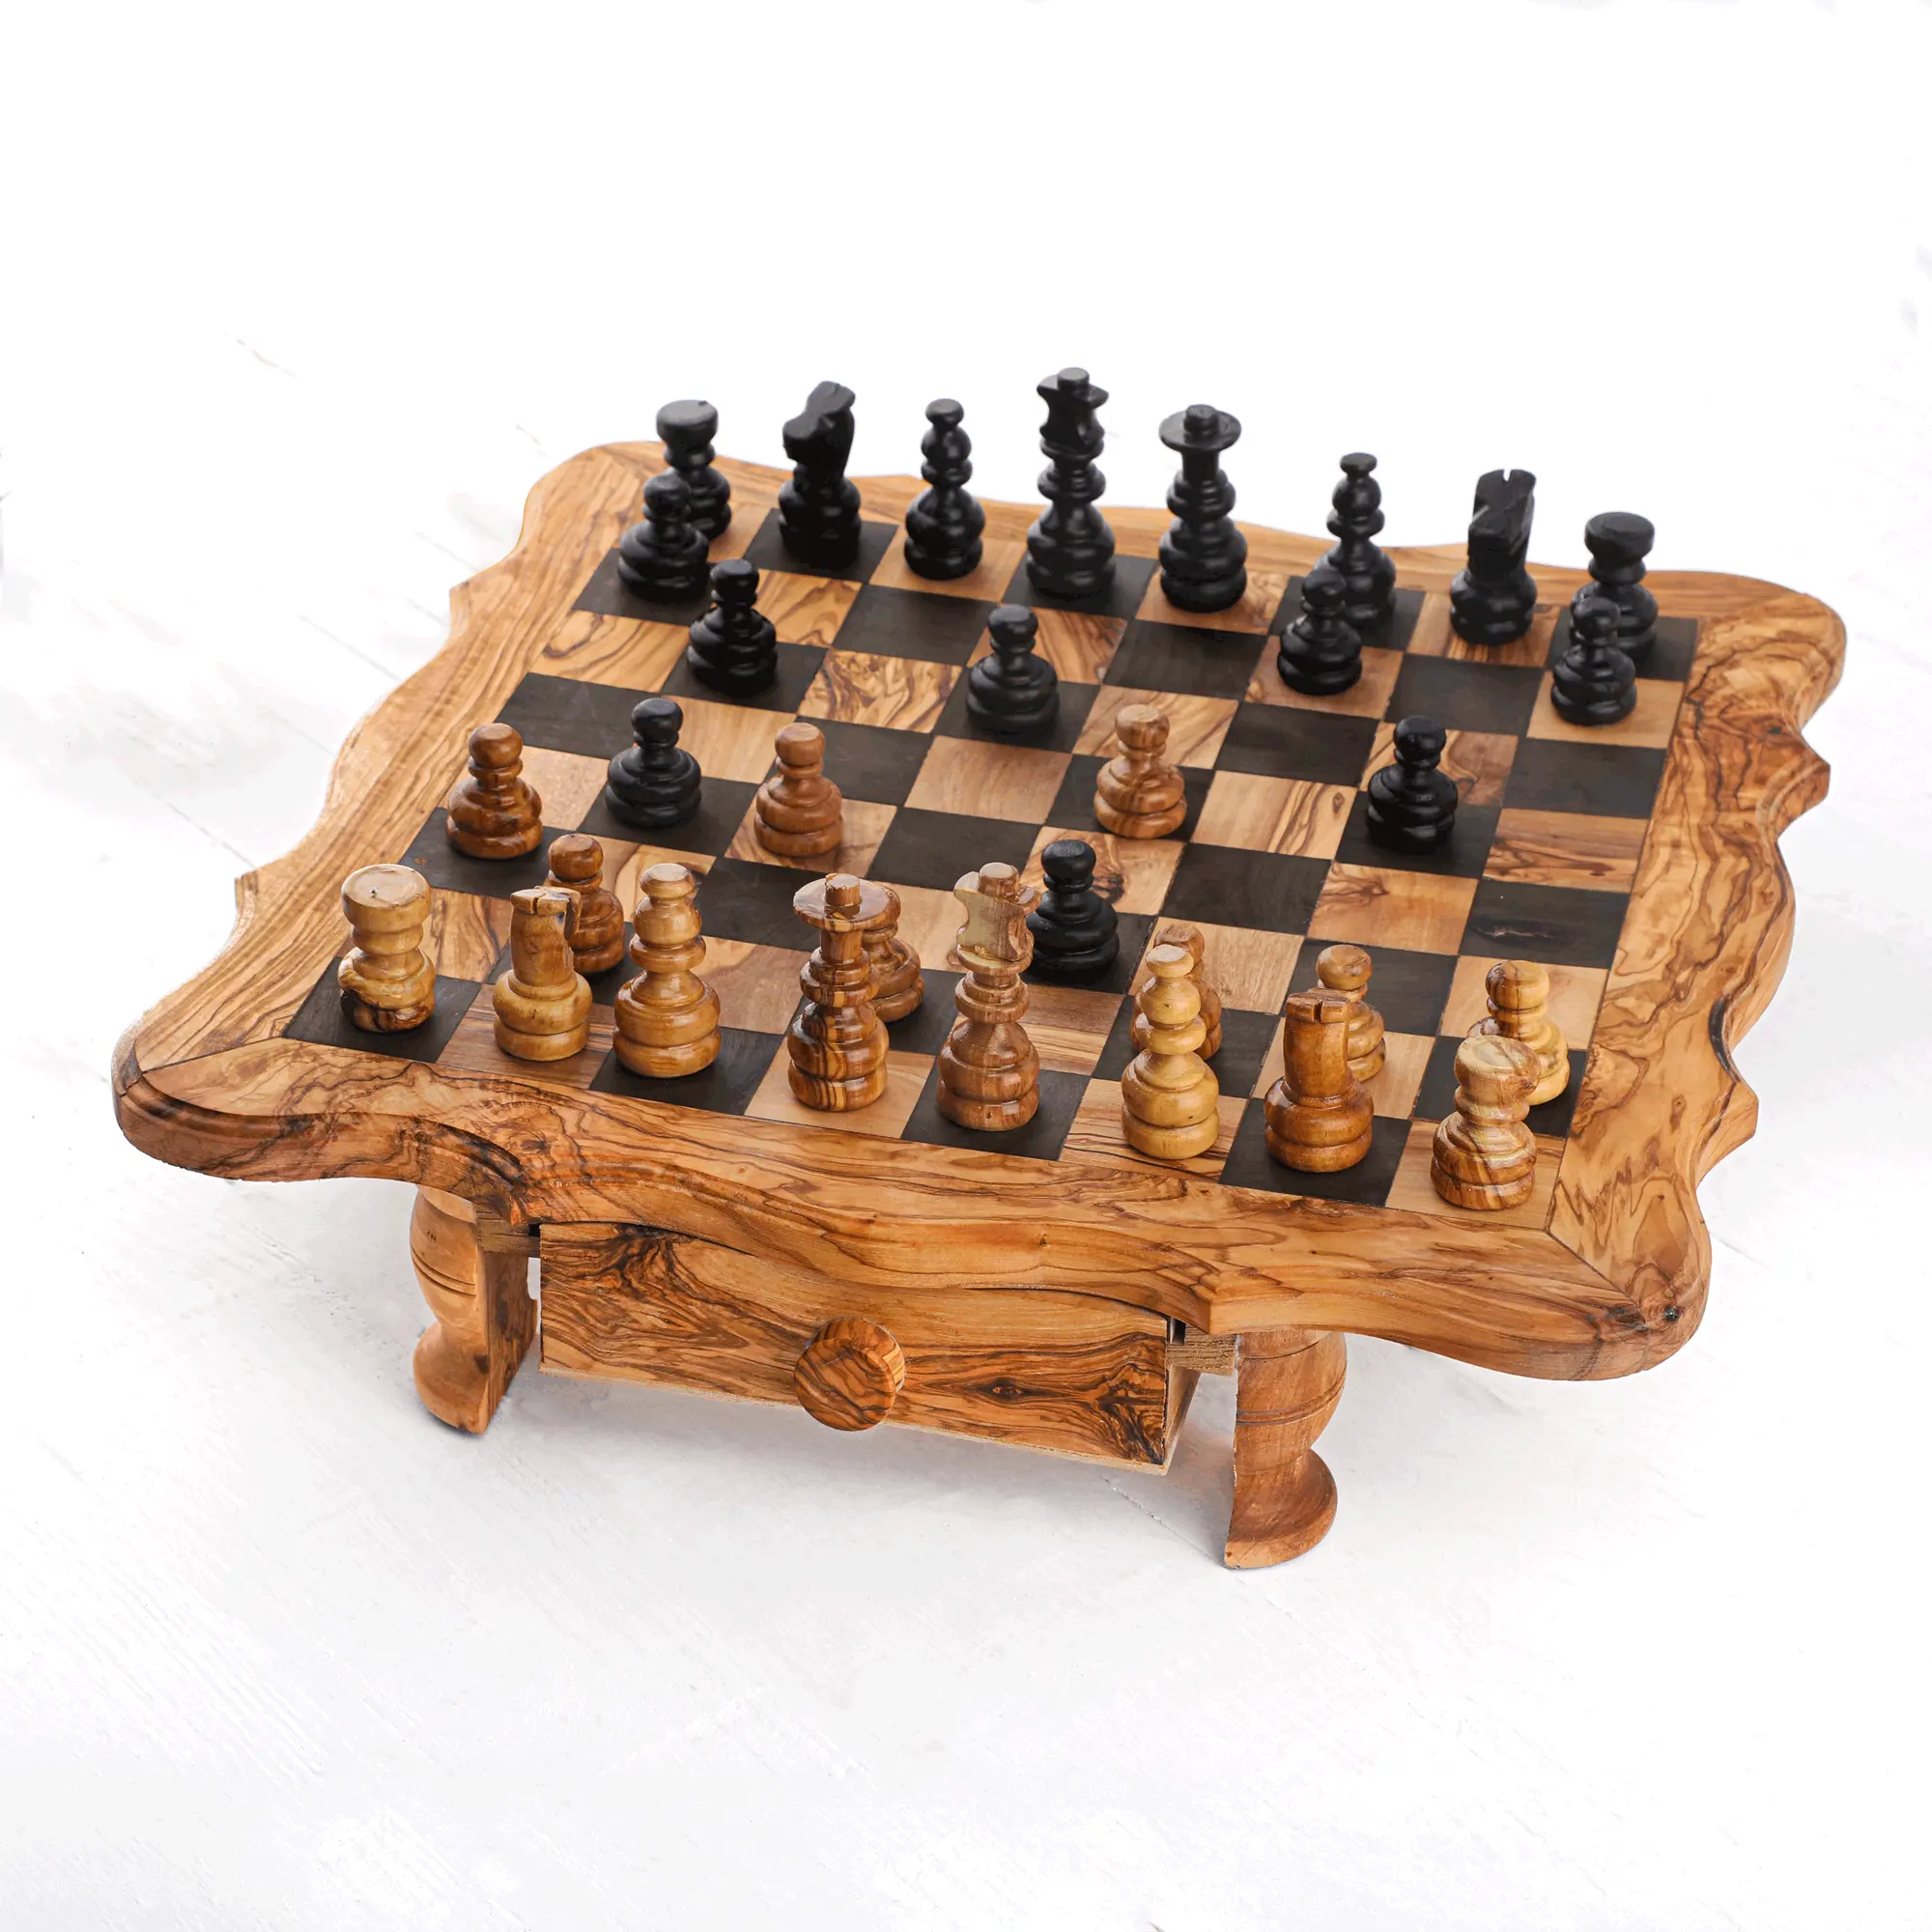 Juego de ajedrez de madera hechos a mano, artesanías de madera de oliva tunecina, gran oferta